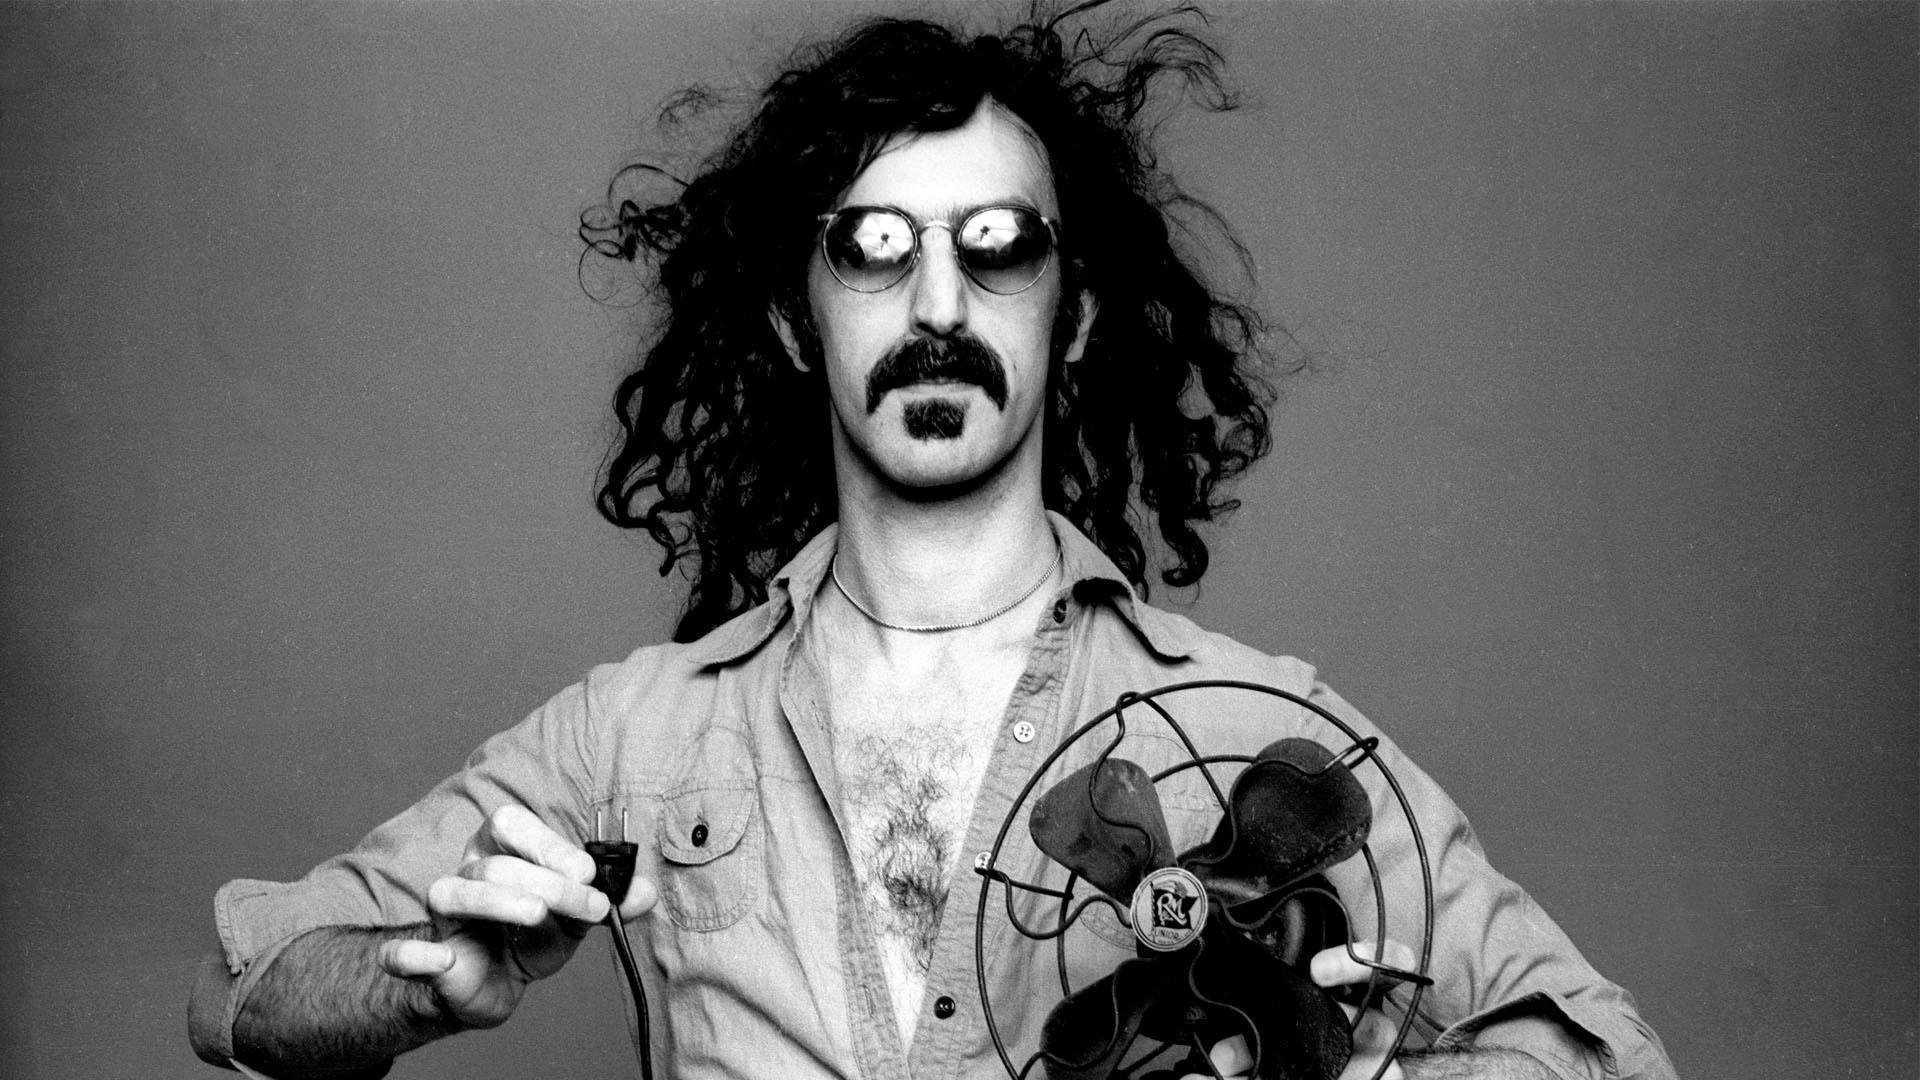 Frank Zappa Freak Out